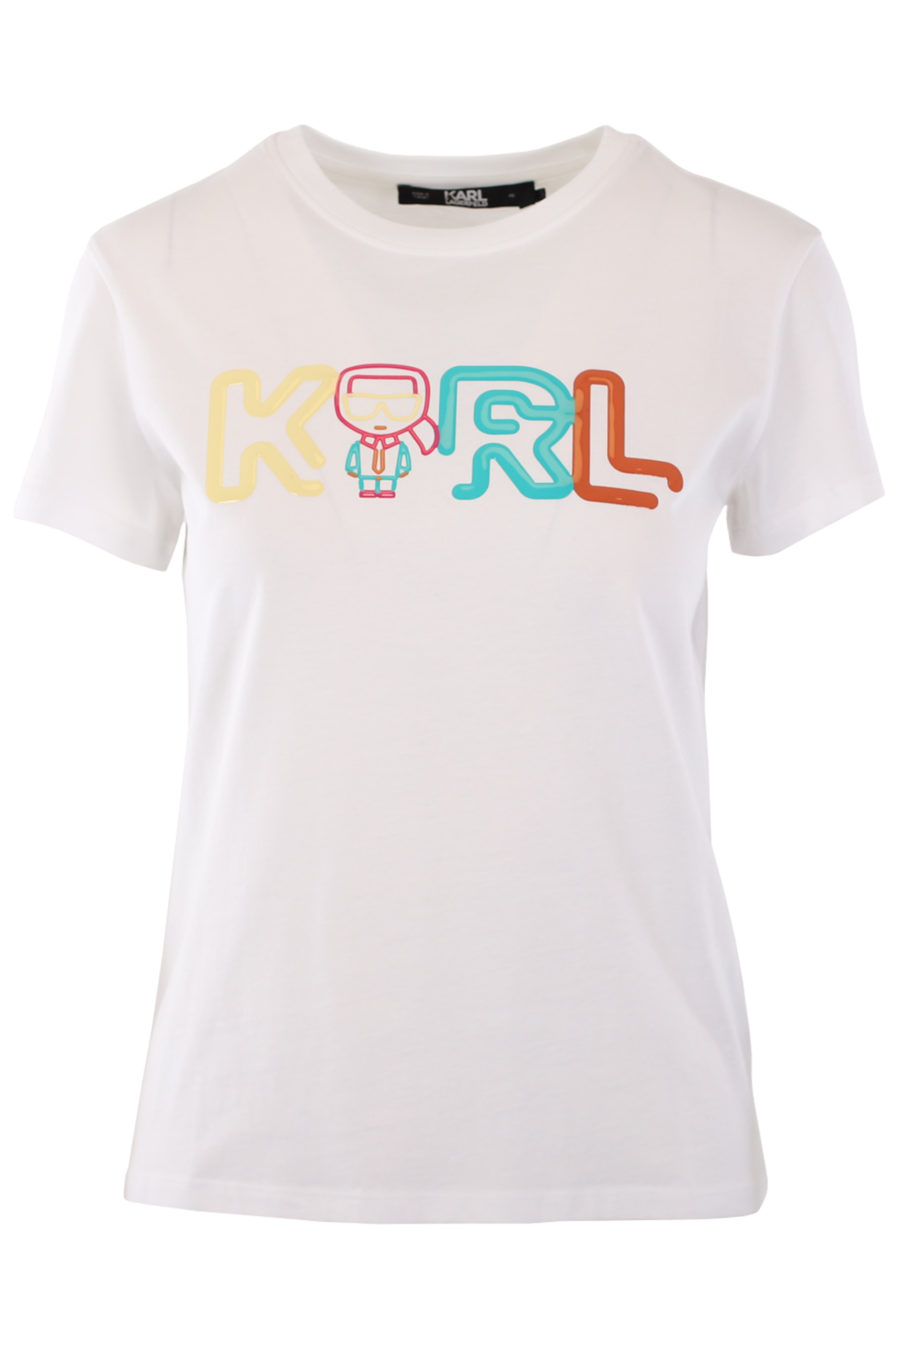 Camiseta blanca con logo multicolor de goma - IMG 0810